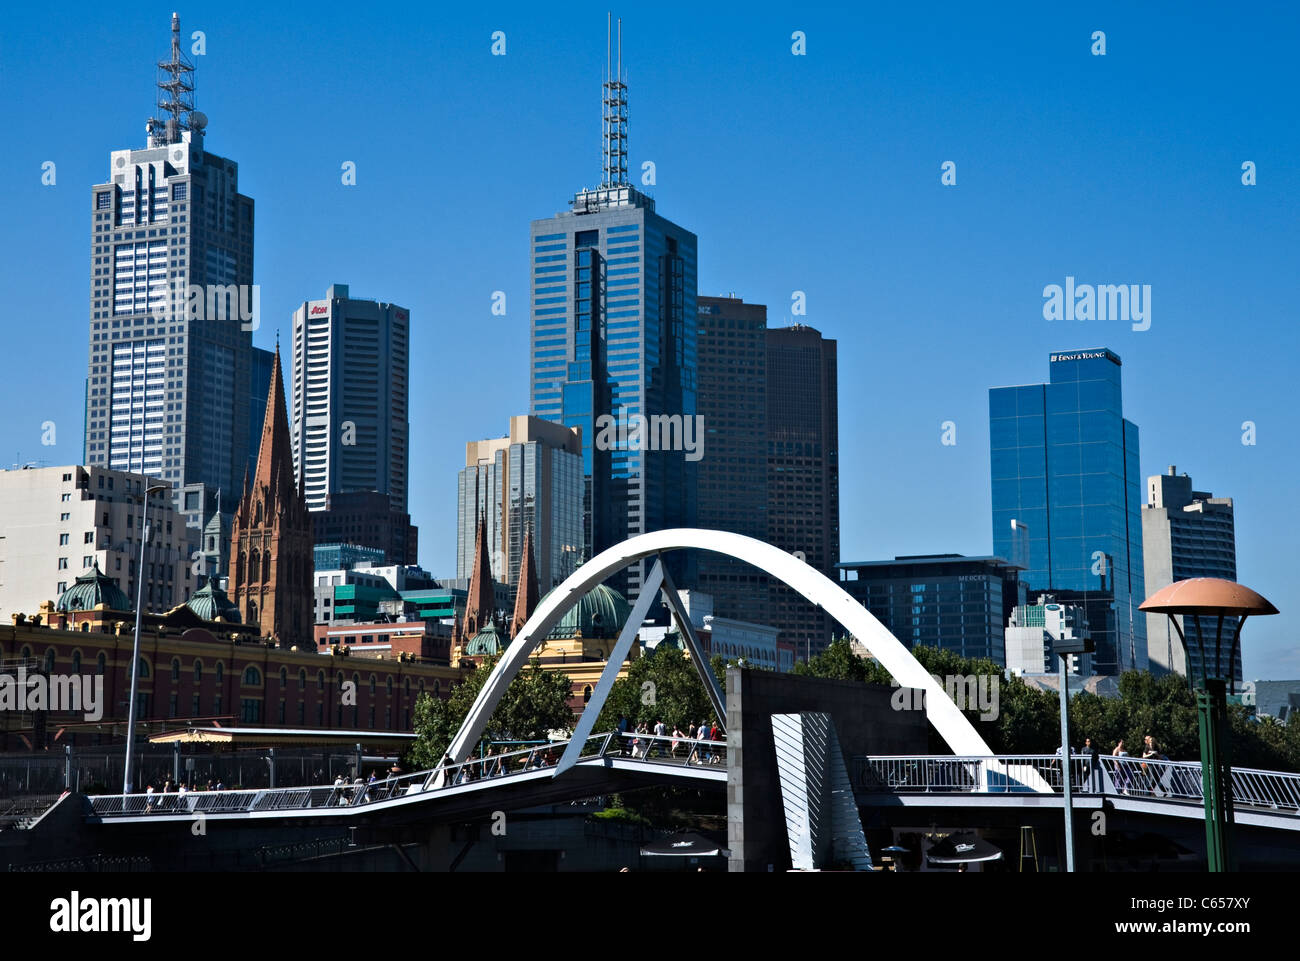 Pont sur la rivière Yarra montrant Collins Street Tour gratte-ciel et bâtiments de la promenade Southbank Melbourne Australie Banque D'Images